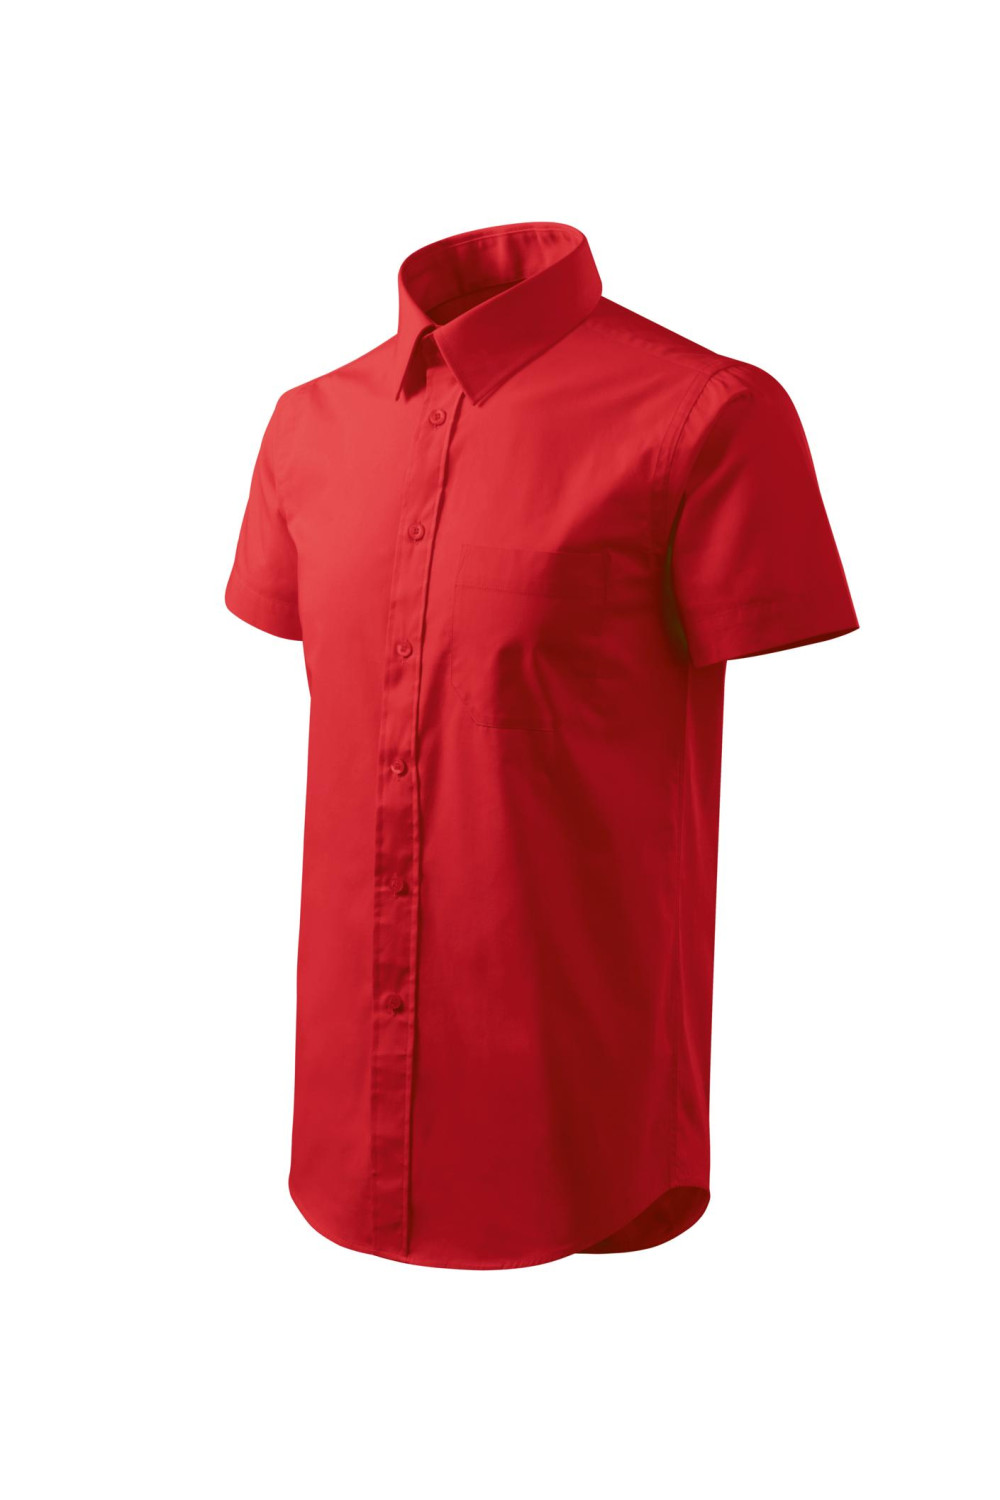 CHIC 207 MALFINI ADLER Koszula męska, krótki rękaw. 100% Bawełna czerwony